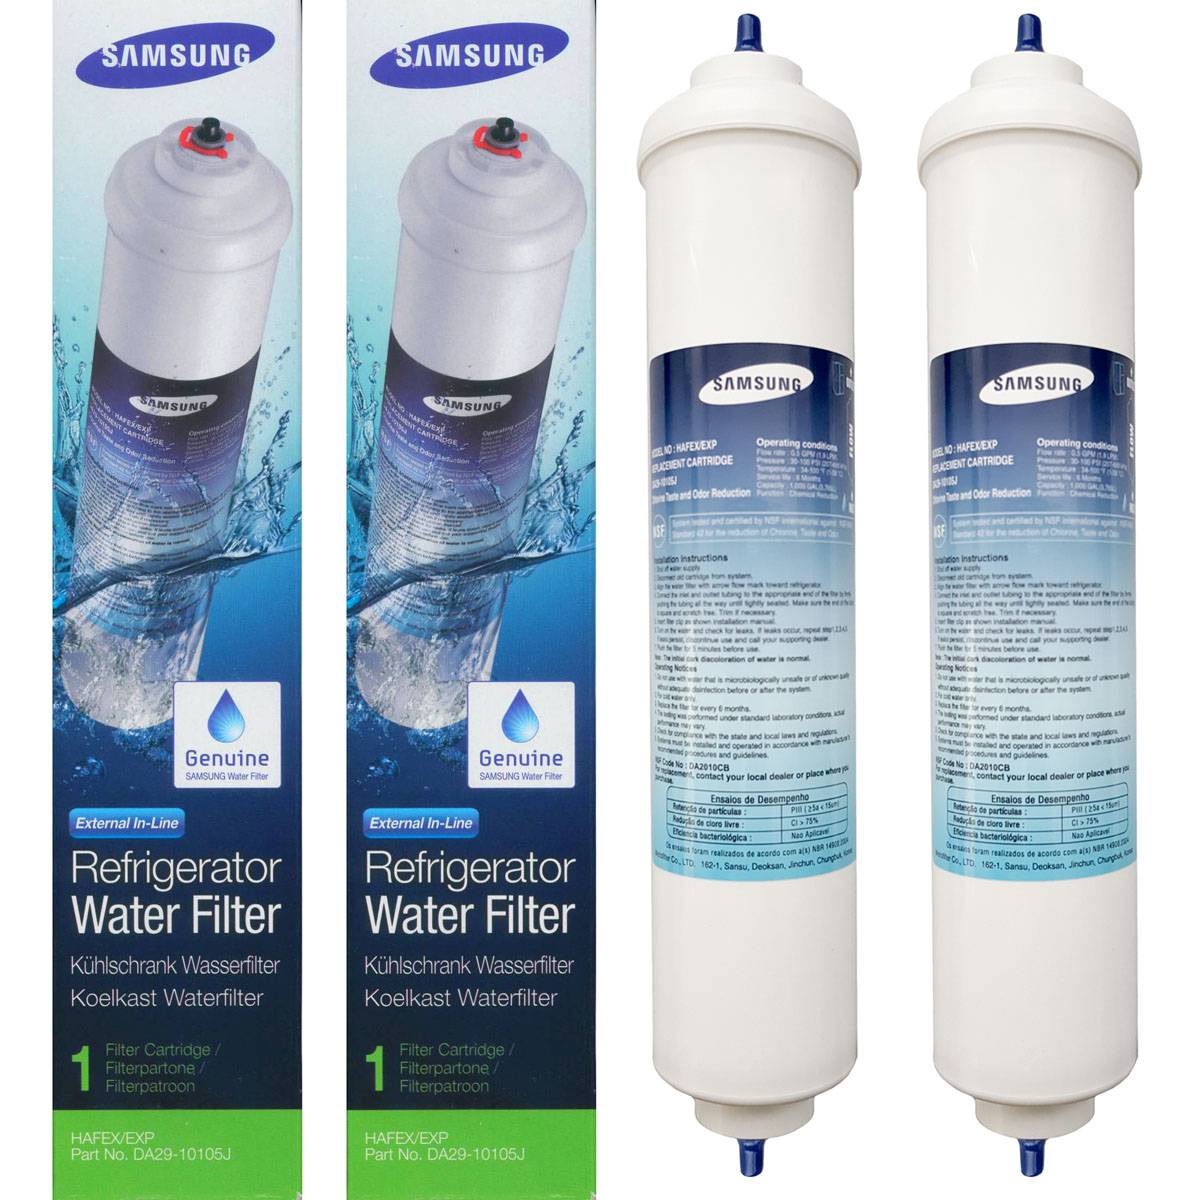 2x Original Samsung Wasserfilter DA29-10105J Filter HAFEX/EXP 3785 Liter